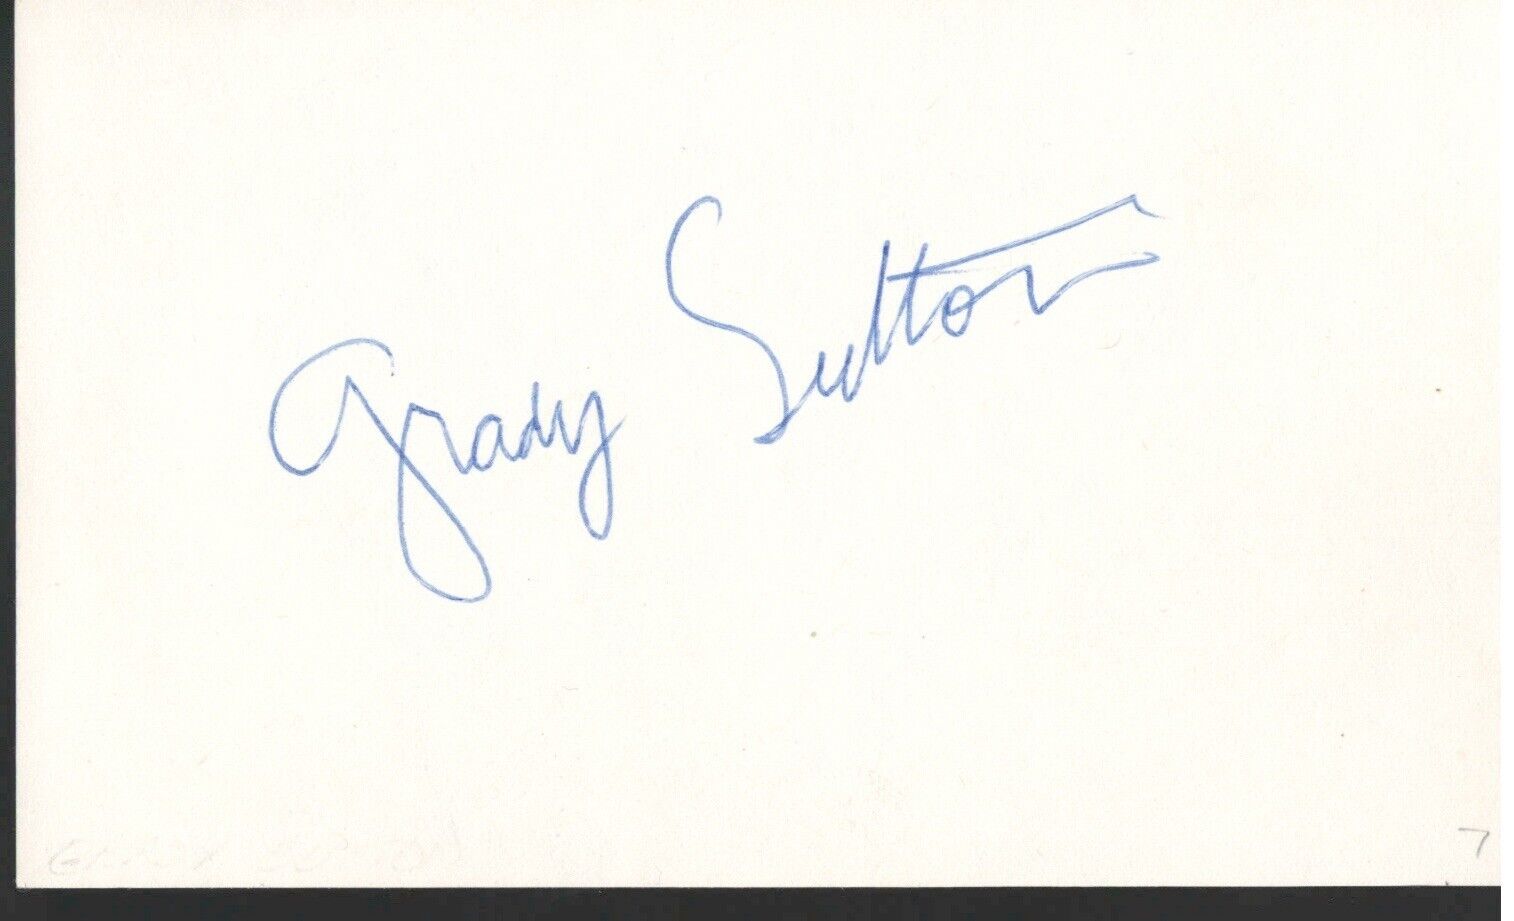 Grady Sutton. (1908-1955). My Fair Lady & Batman series. 5x3 signed card. COA